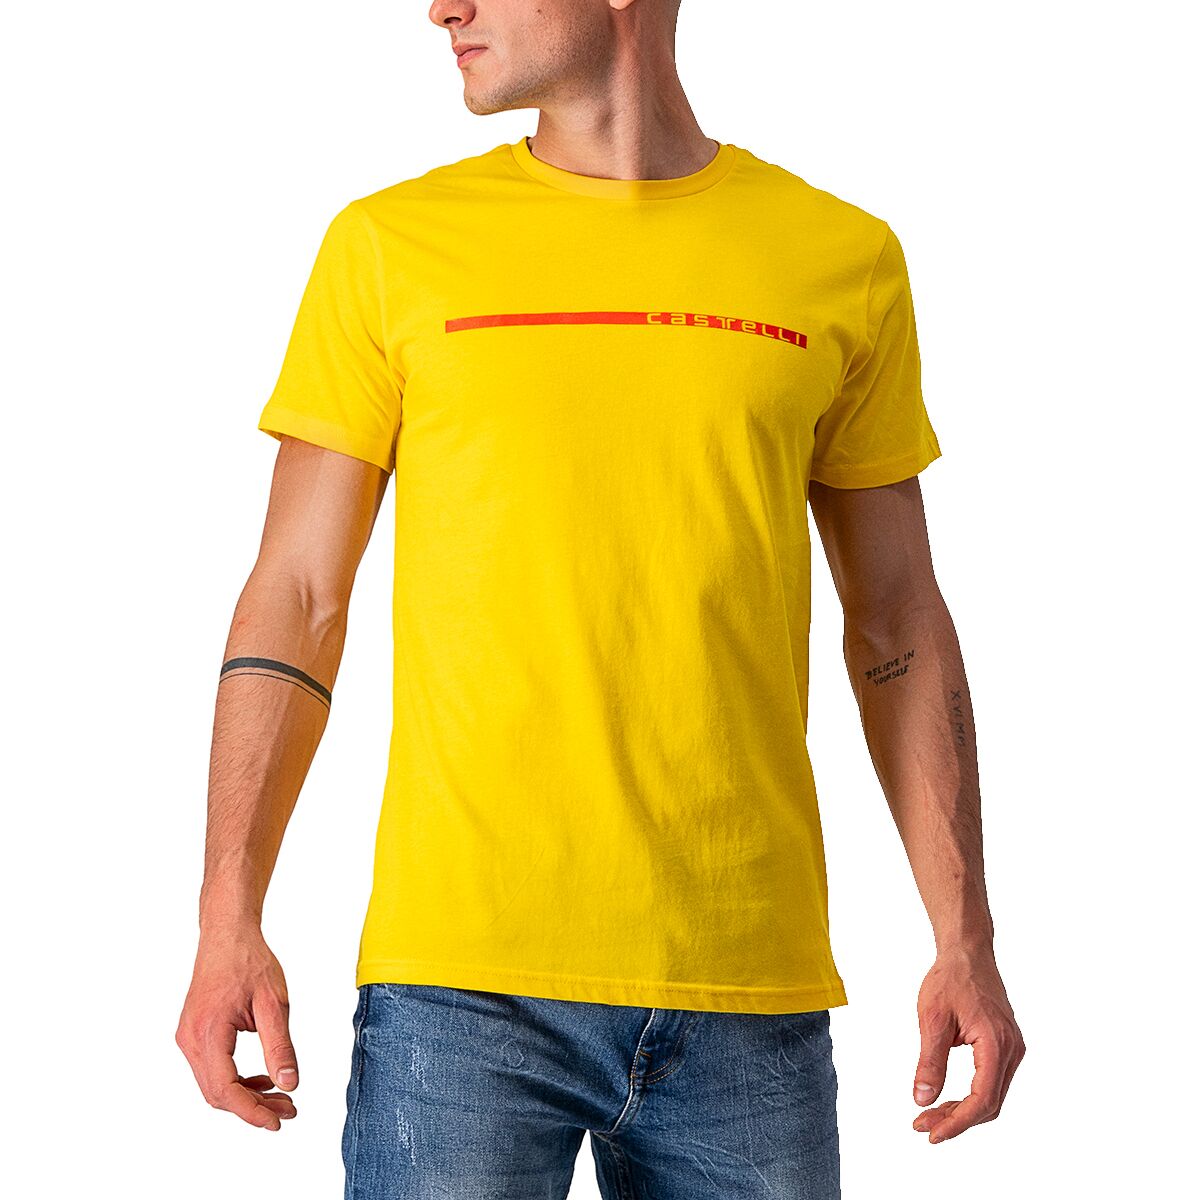 Ventaglio T-Shirt - Men